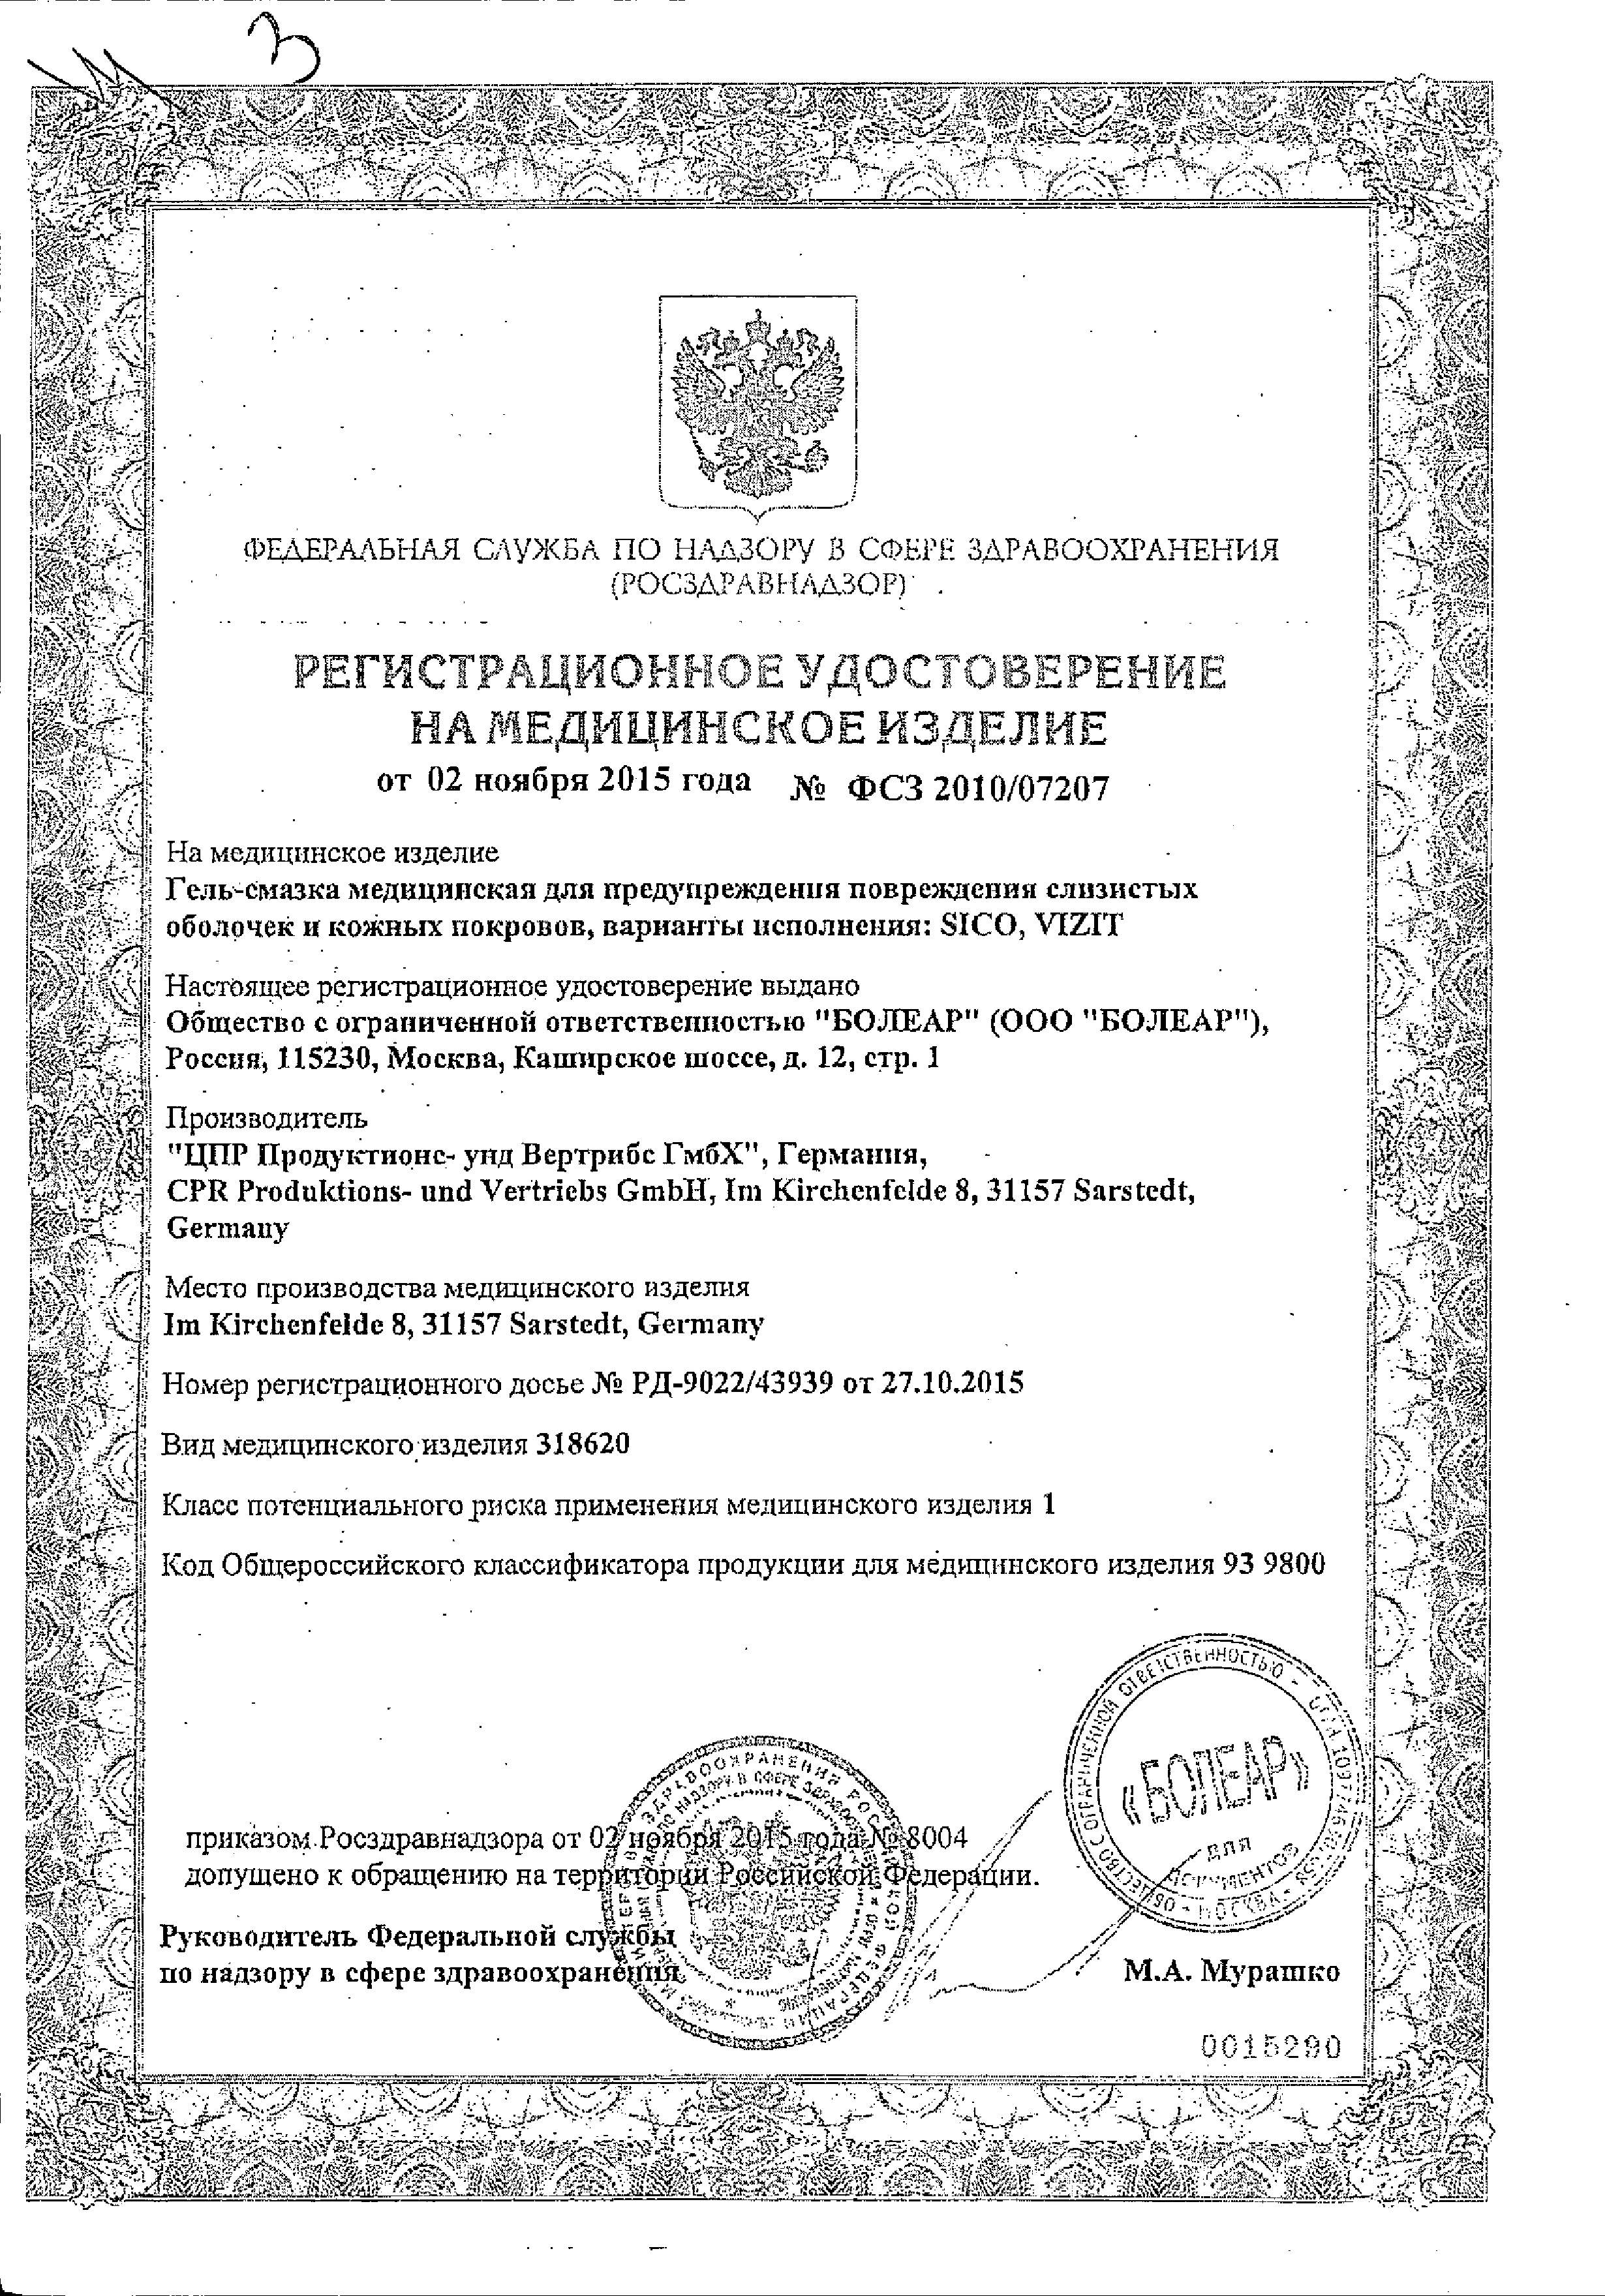 Гель-смазка Vizit Erotic сертификат